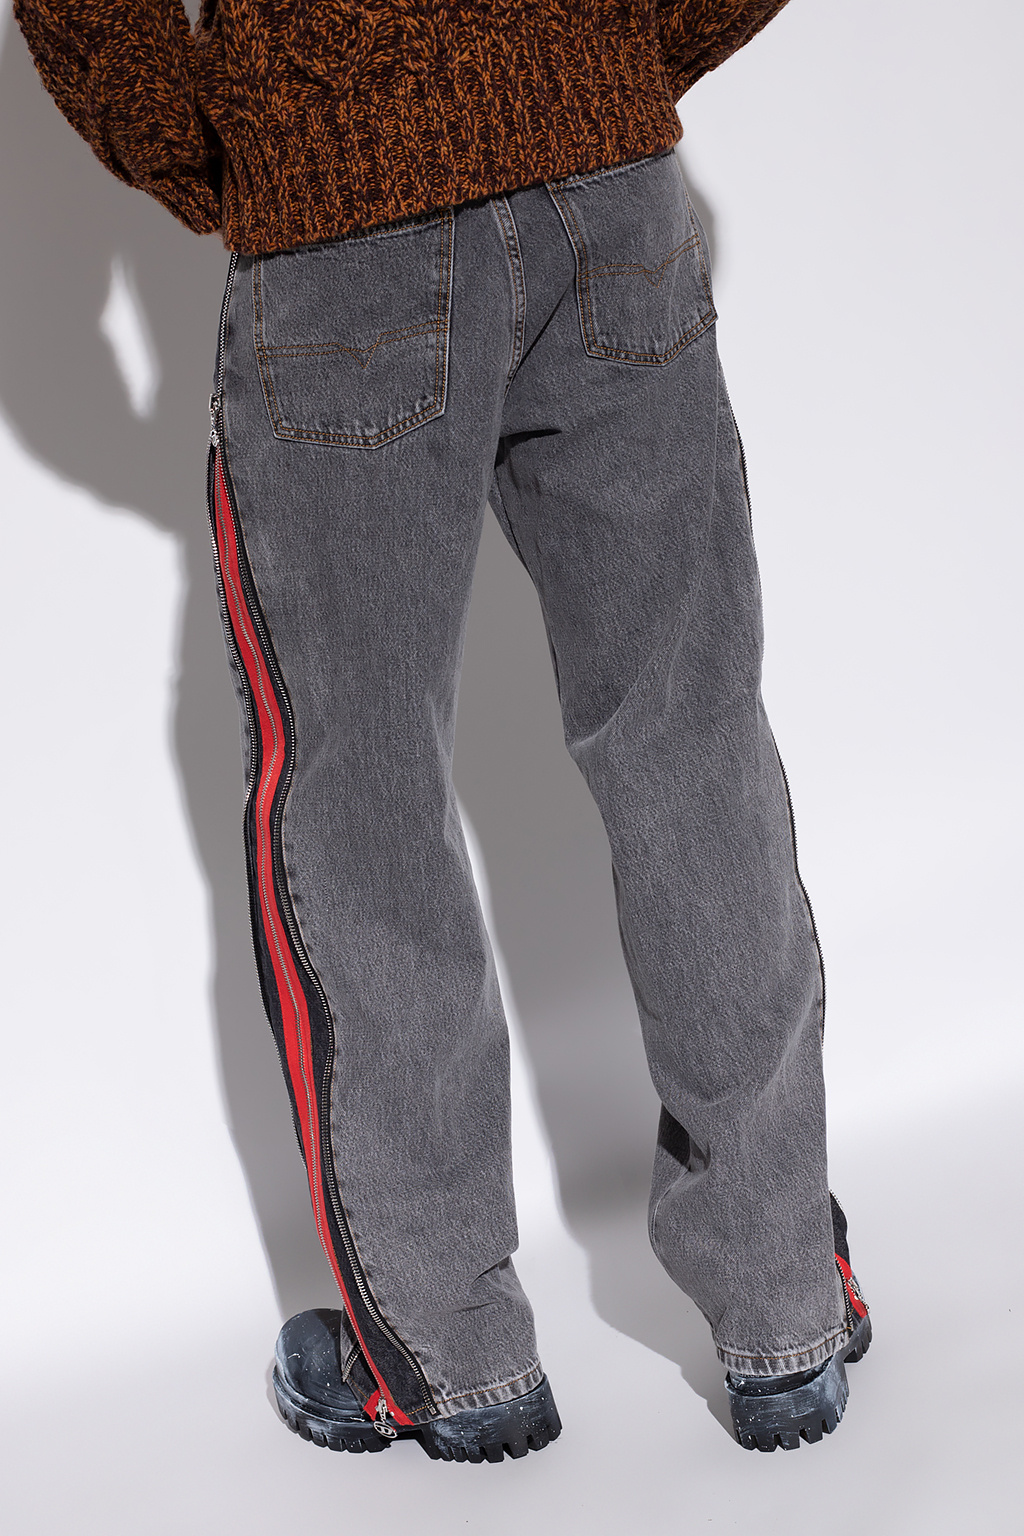 Side - Jean's levi's 511 - GenesinlifeShops Ukraine - stripe jeans